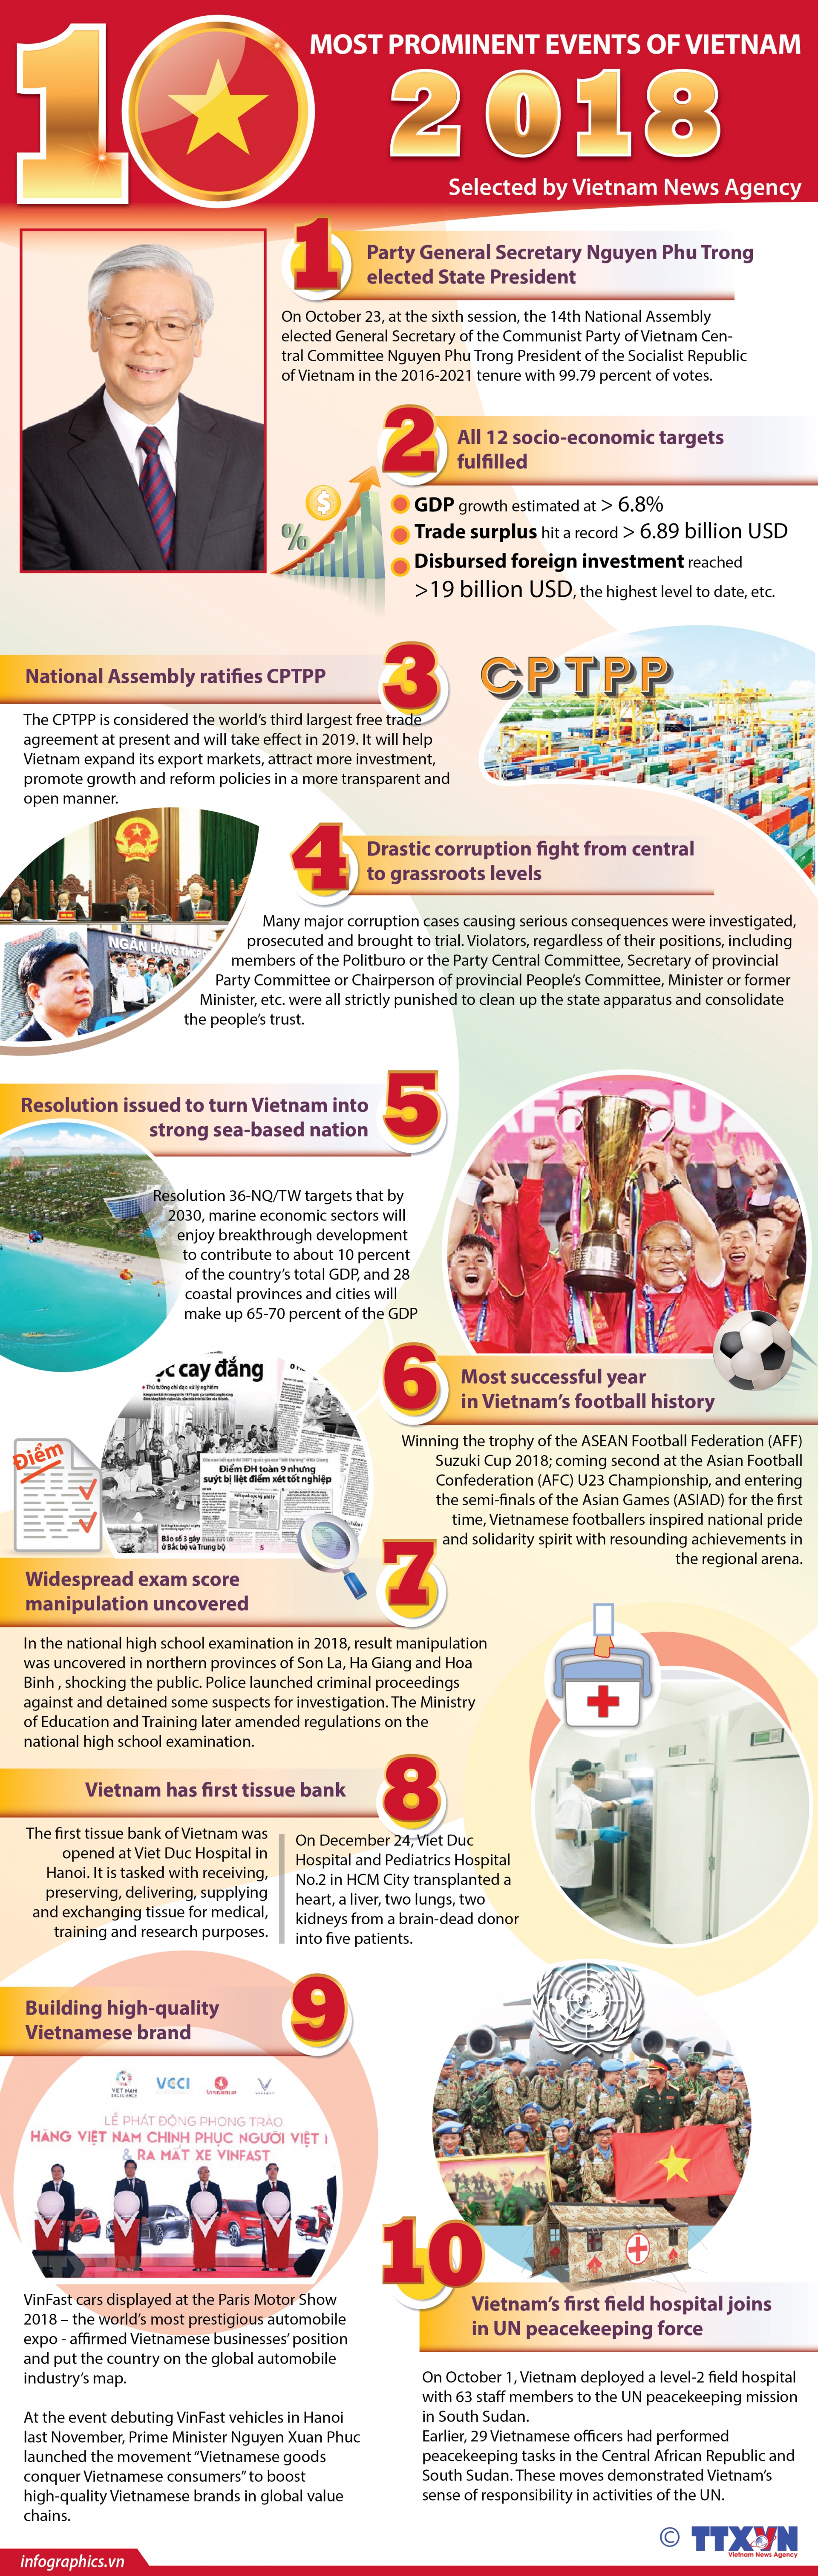 top 10 events of vietnam in 2018